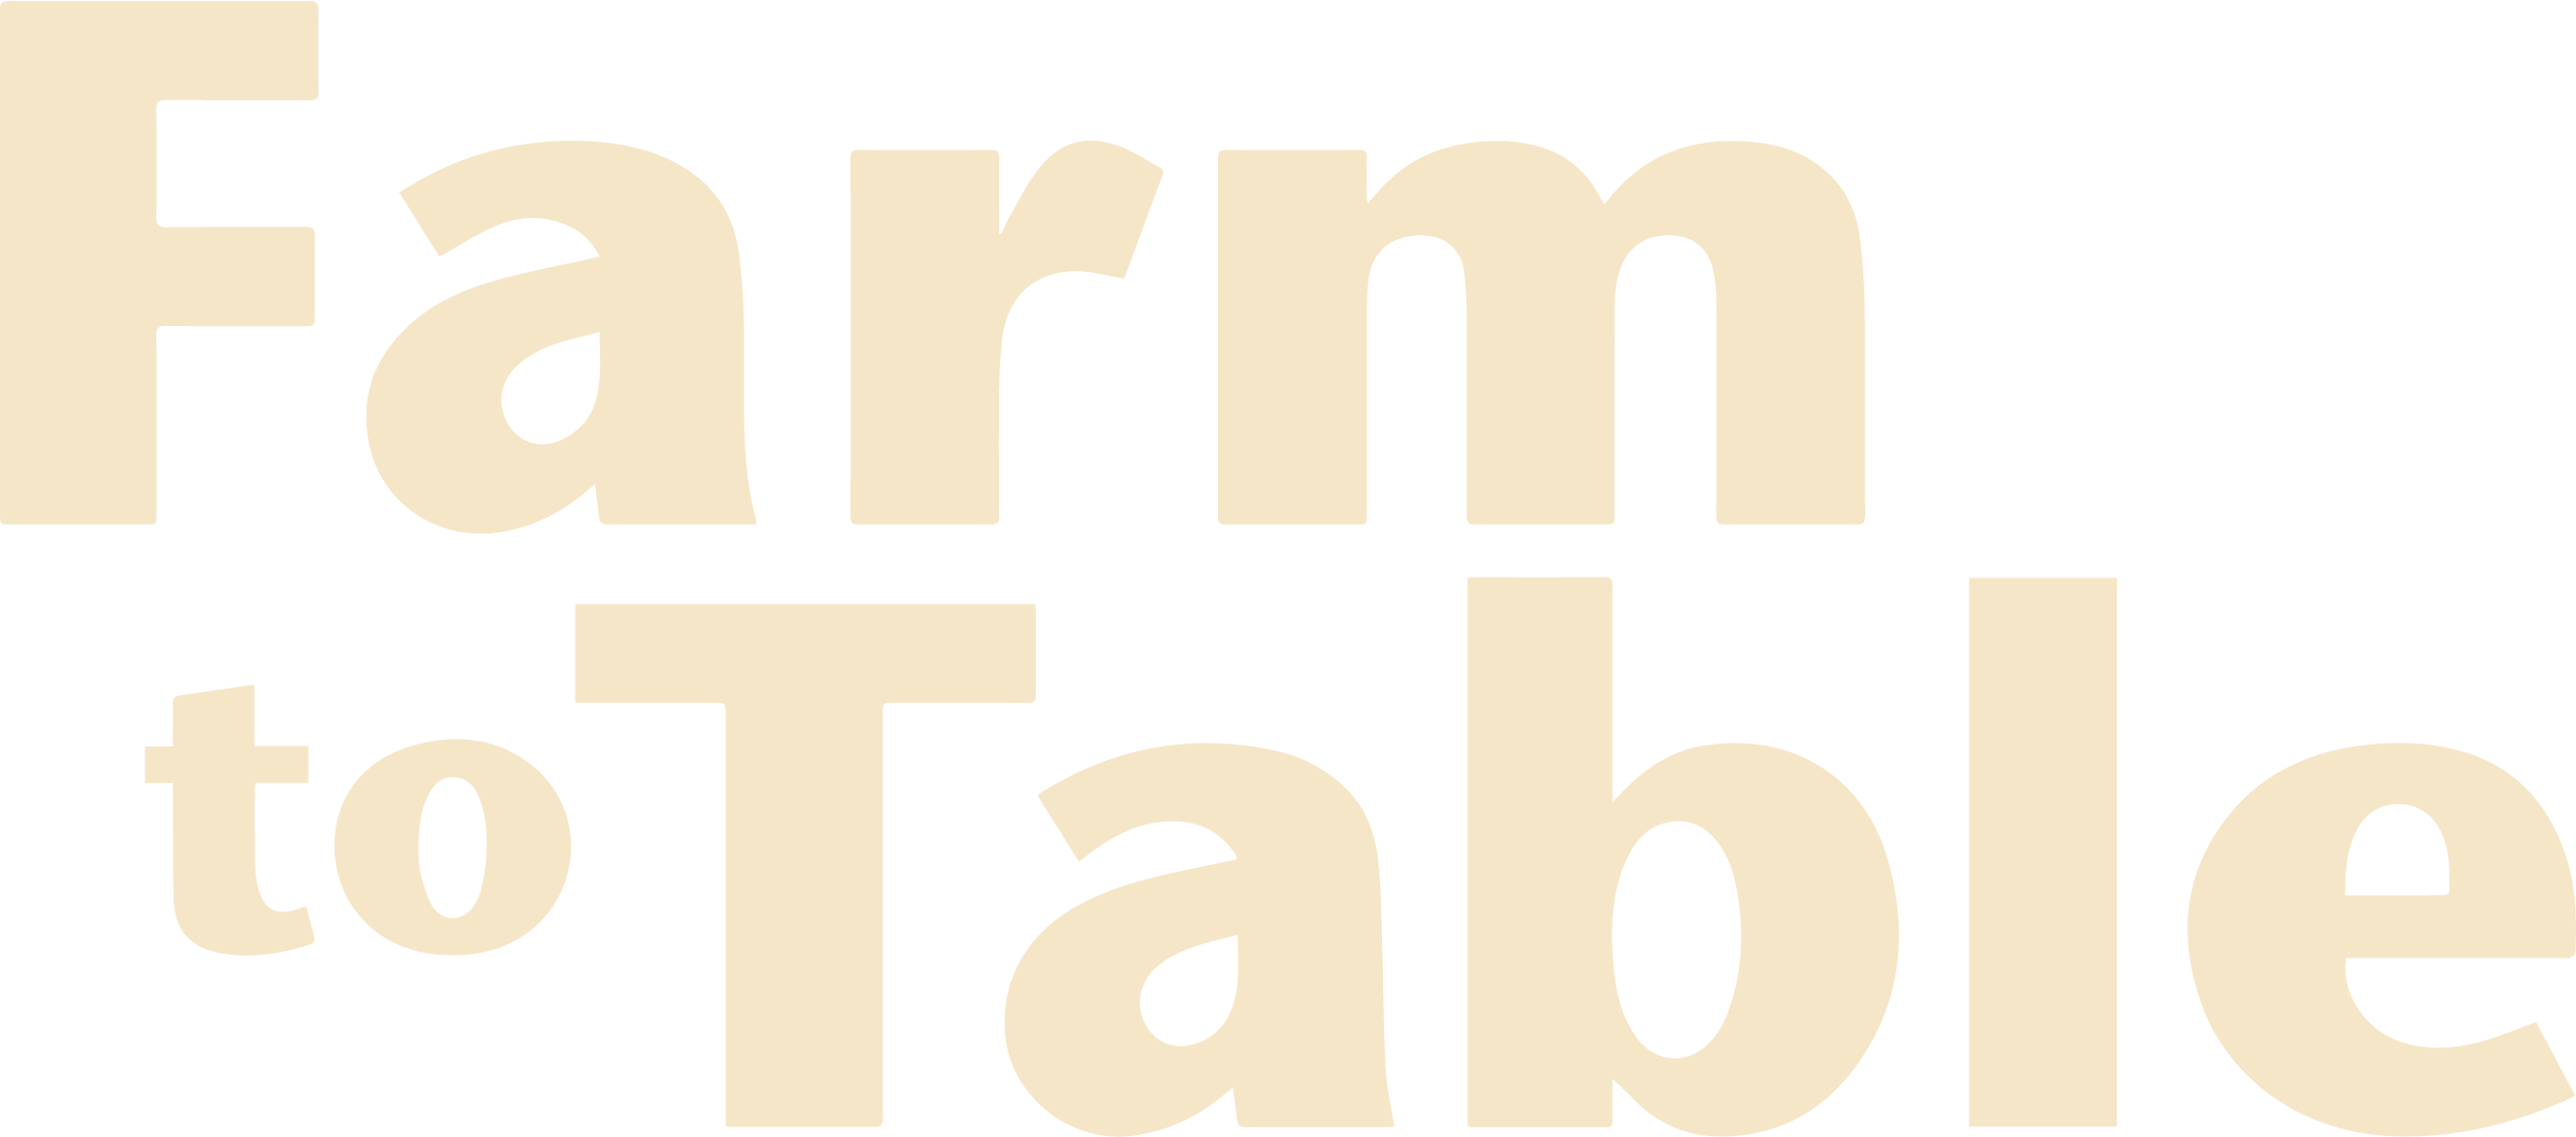 Farm to Table logo